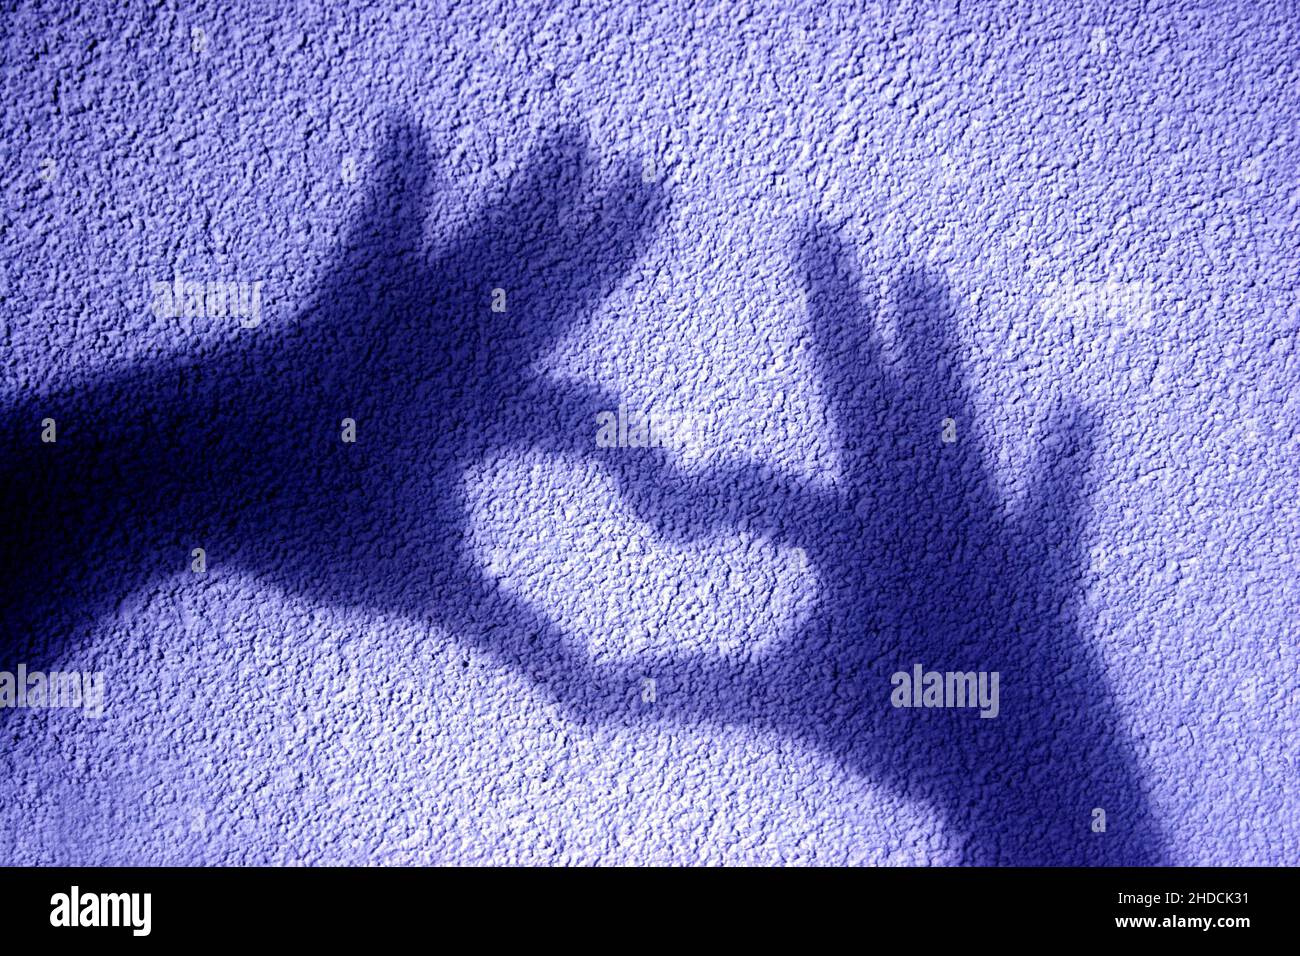 Schattenspiel, Schatten zweier Hände formen ein Herz auf eine Mauer, Foto Stock